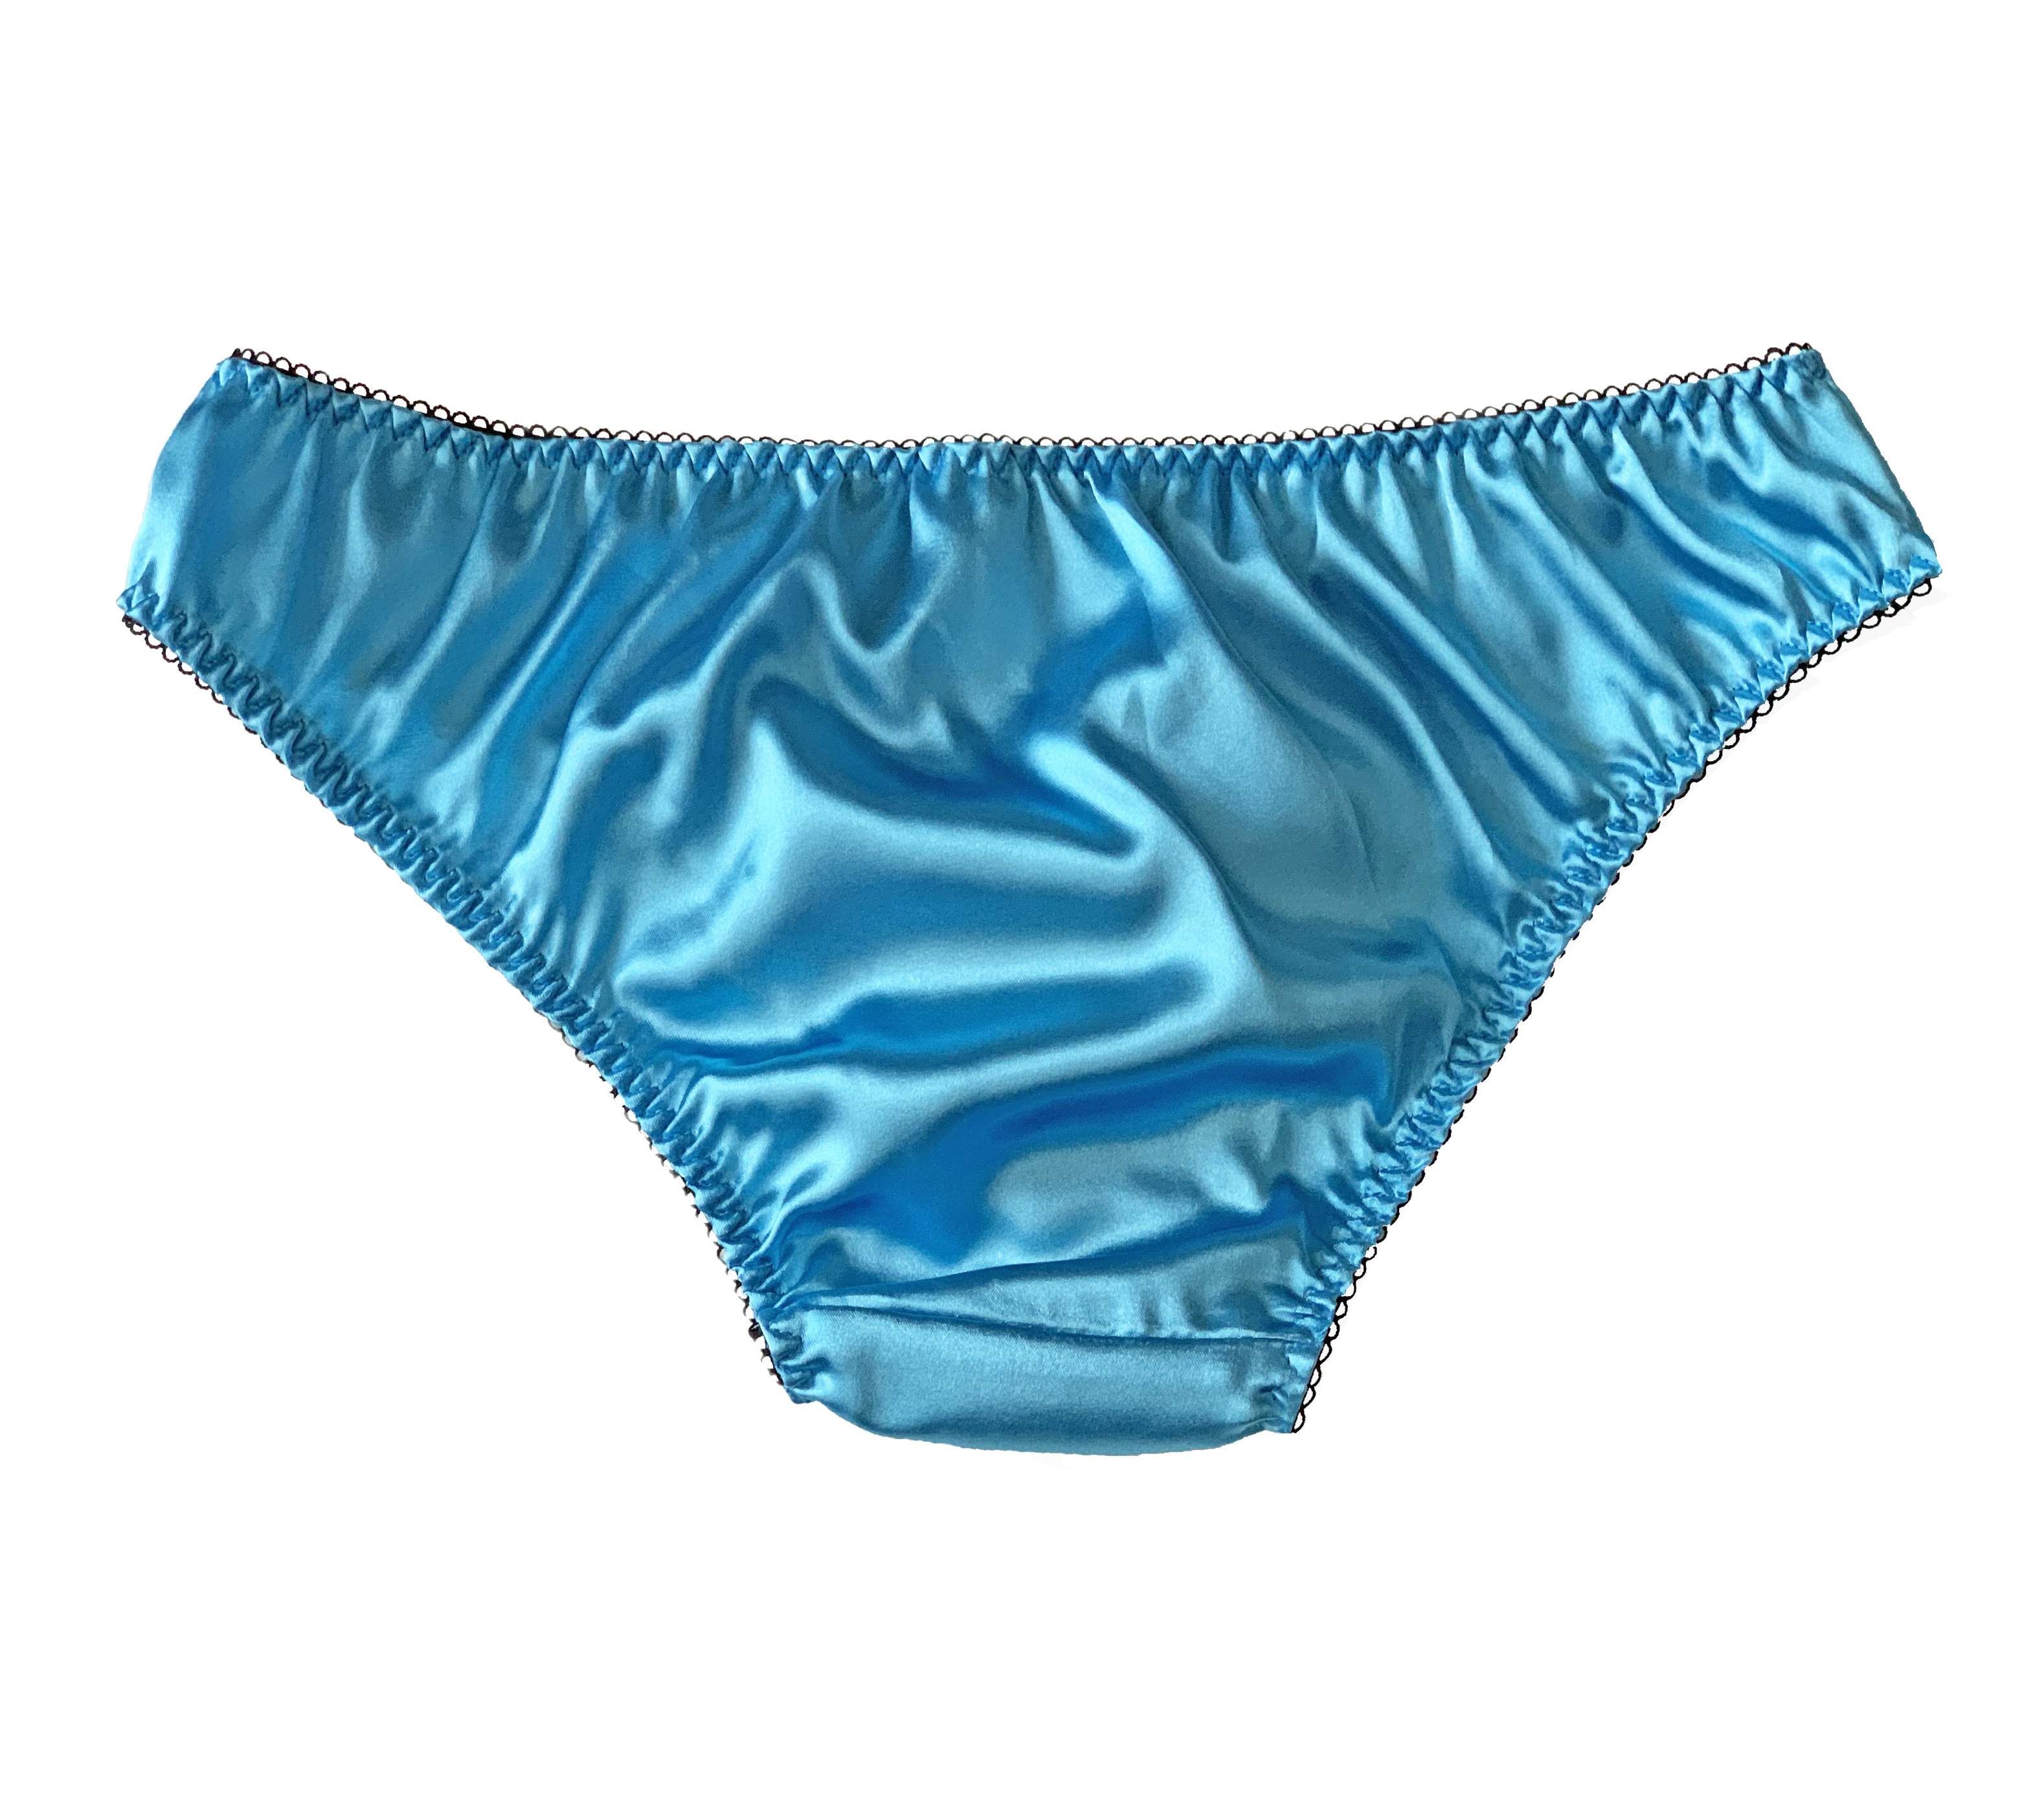 Luxury Satin Frilly Sissy Panties Bikini Knicker Underwear Briefs Size 10 20 Ebay